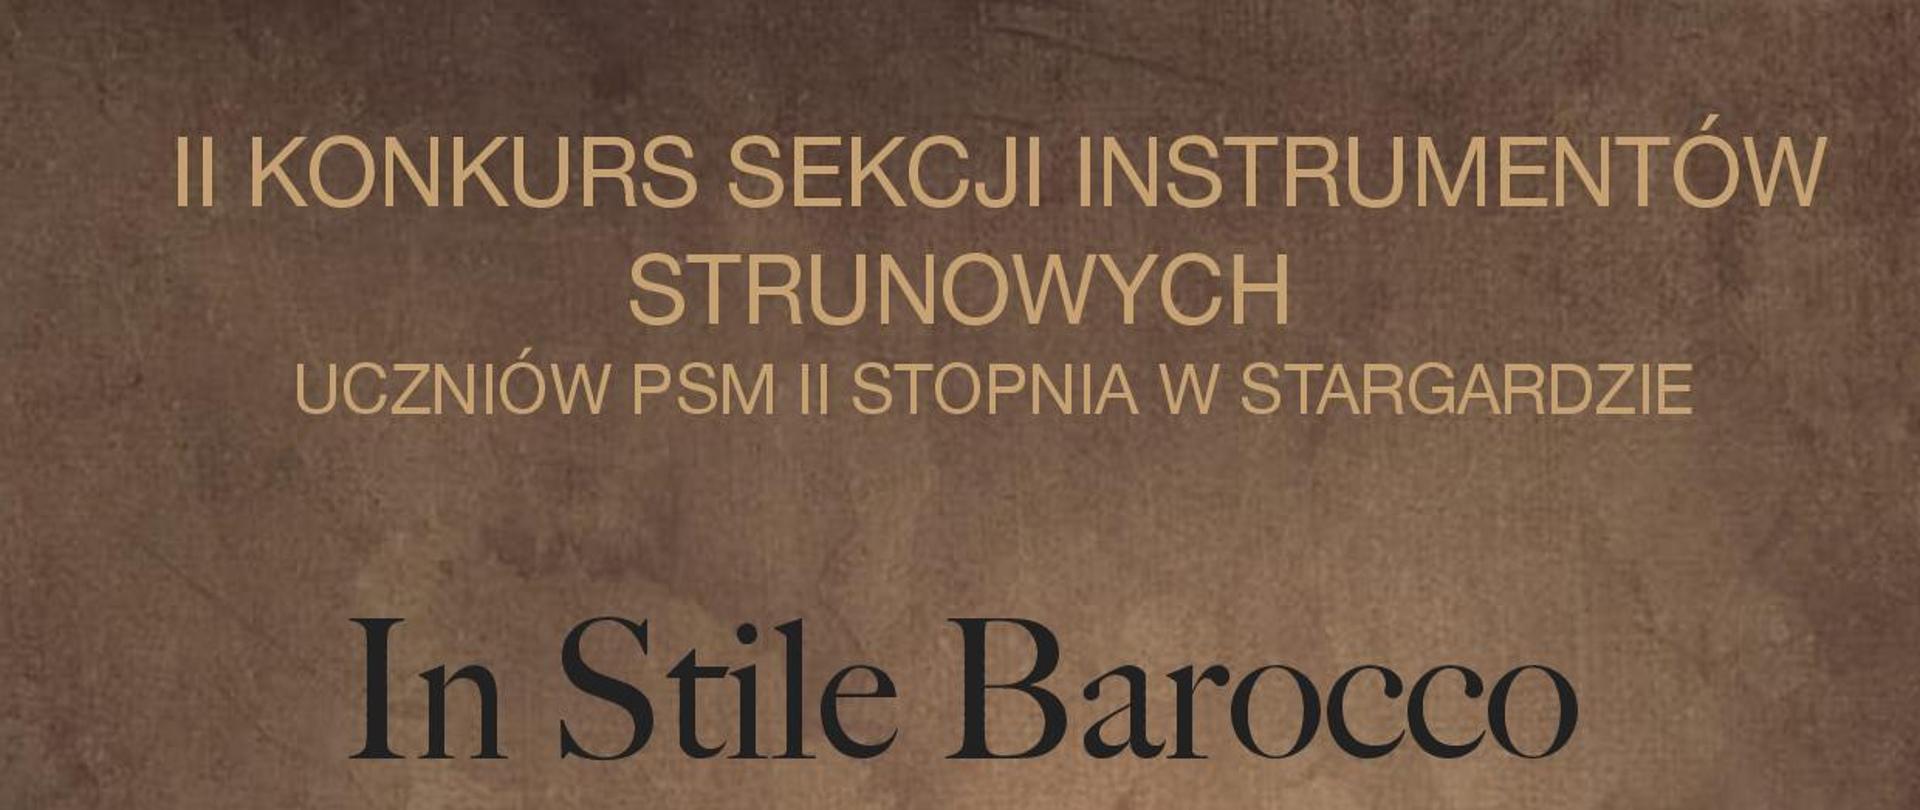 Plakat informacyjny 2. Konkursu sekcji instrumentów strunowych In Stile Barocco uczniów Państwowej Szkoły Muzycznej drugiego stopnia w Stargardzie w dniu 5 kwietnia 2023.